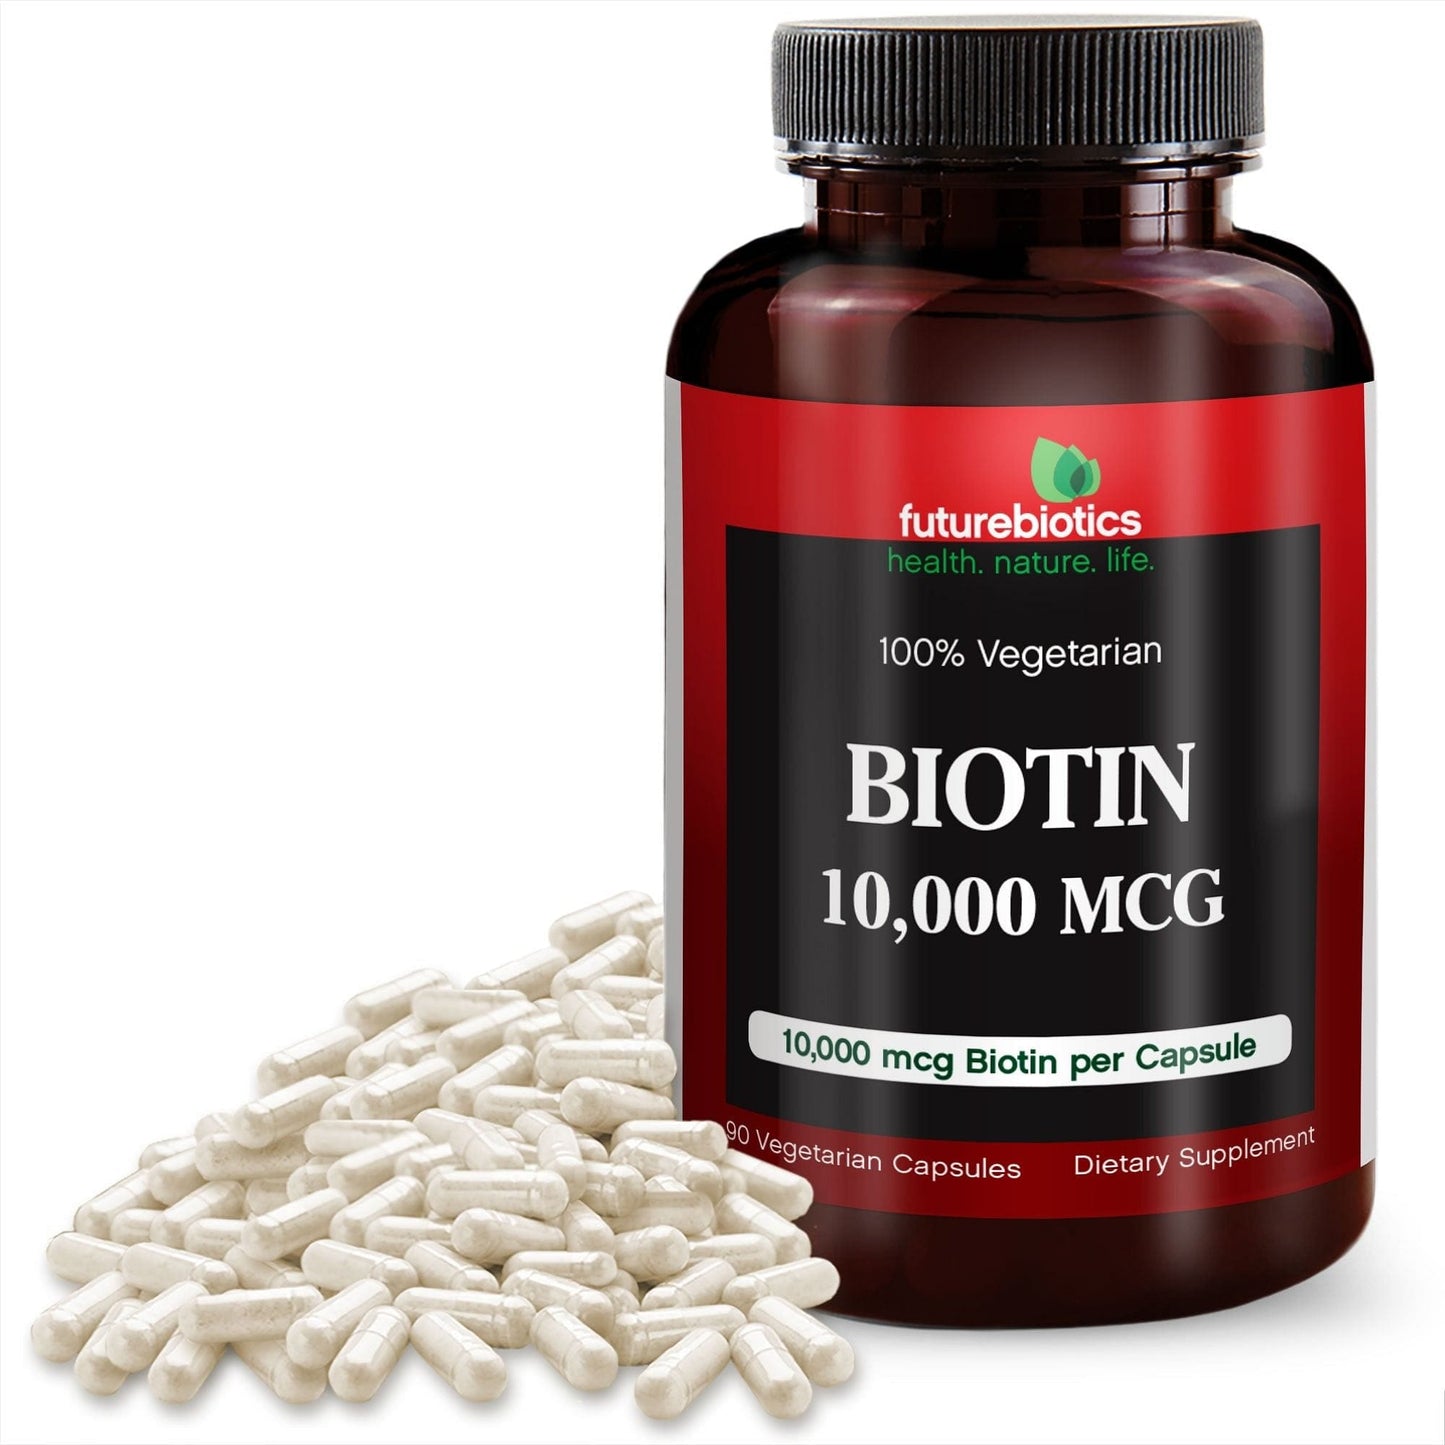 Futurebiotics Biotin 10,000 mcg, 90 Vegetarian Capsules